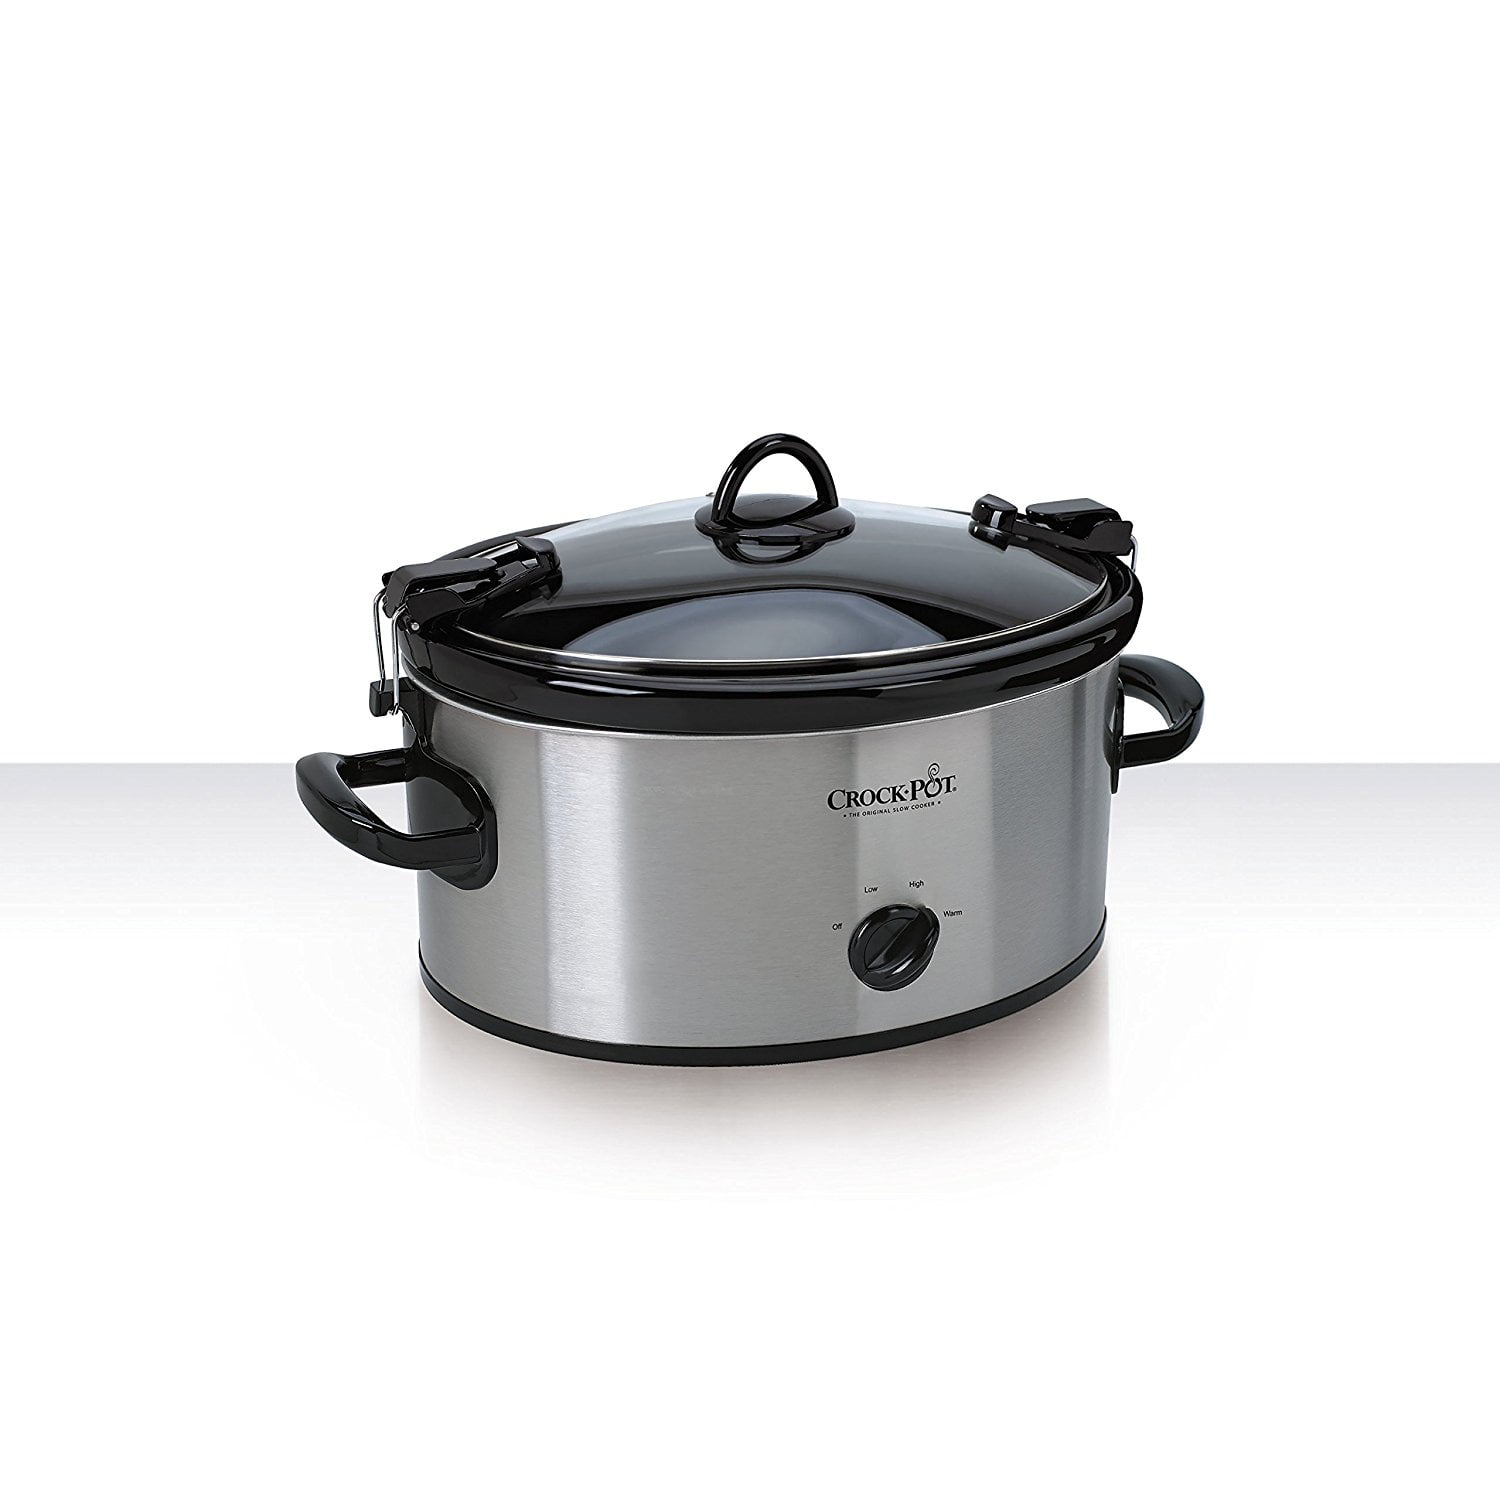 Crock-Pot Cook & Carry 6-Quart Slow Cooker black/silver SCCPVC600EC-S -  Best Buy